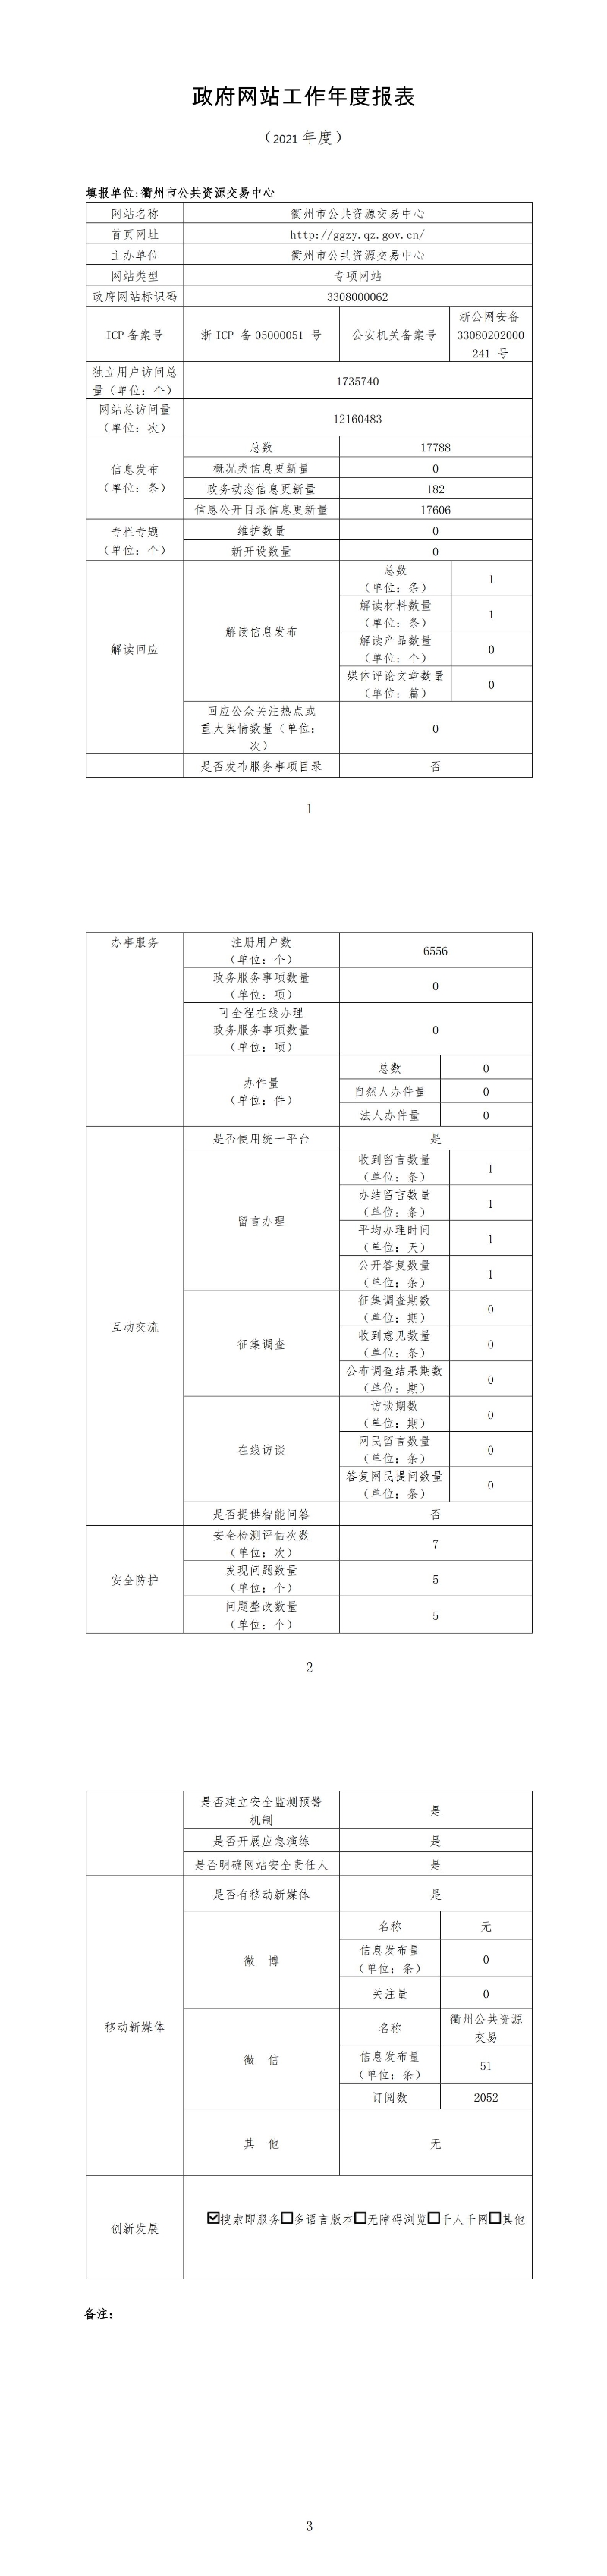 衢州公共资源交易中心2021年报.jpg